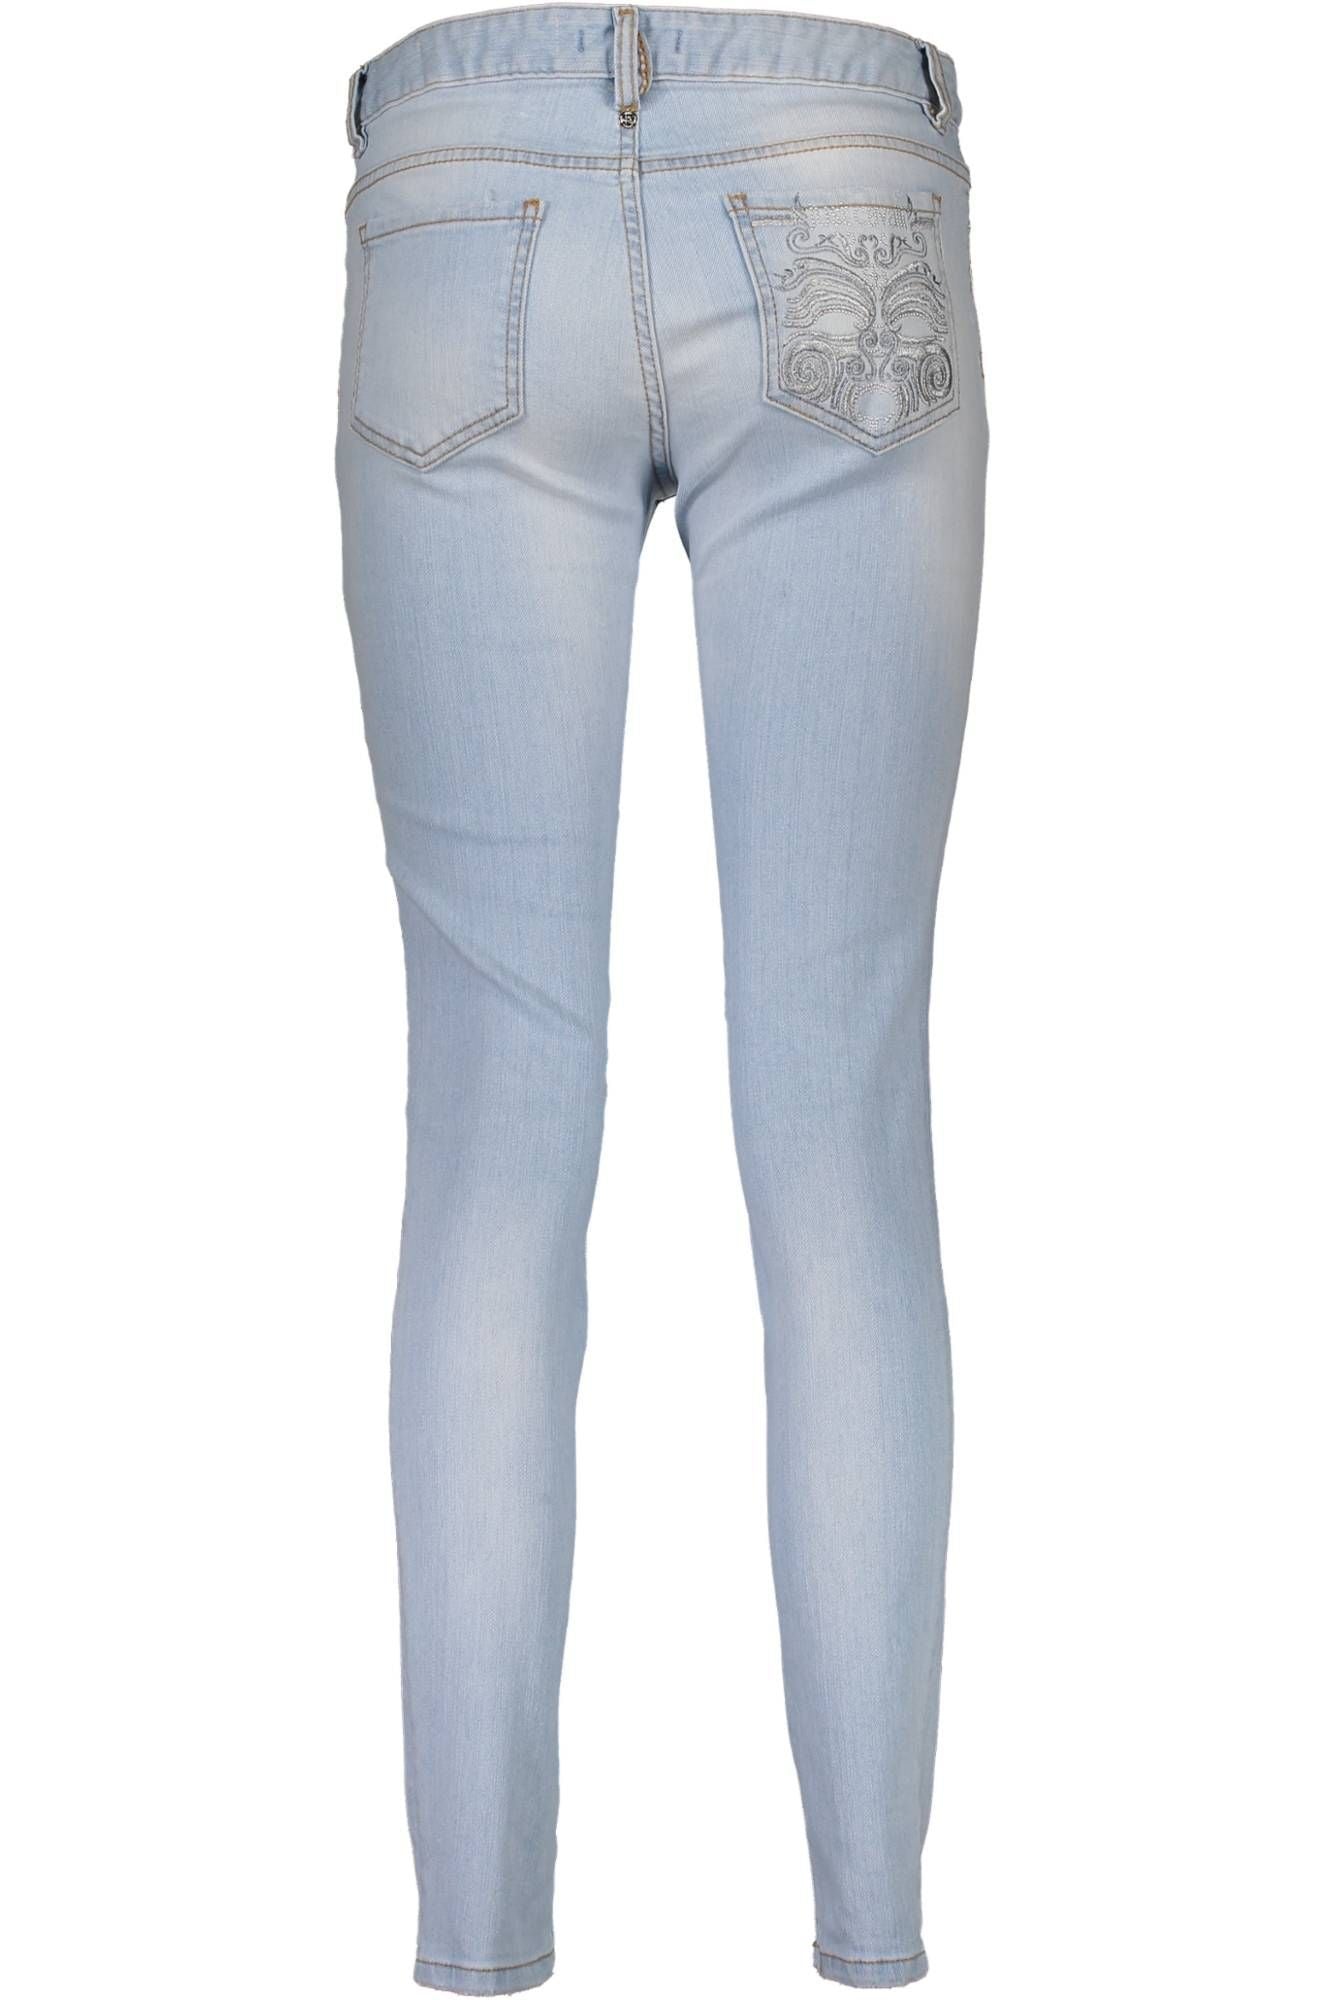 Just Cavalli Light Blue Cotton Jeans & Pant